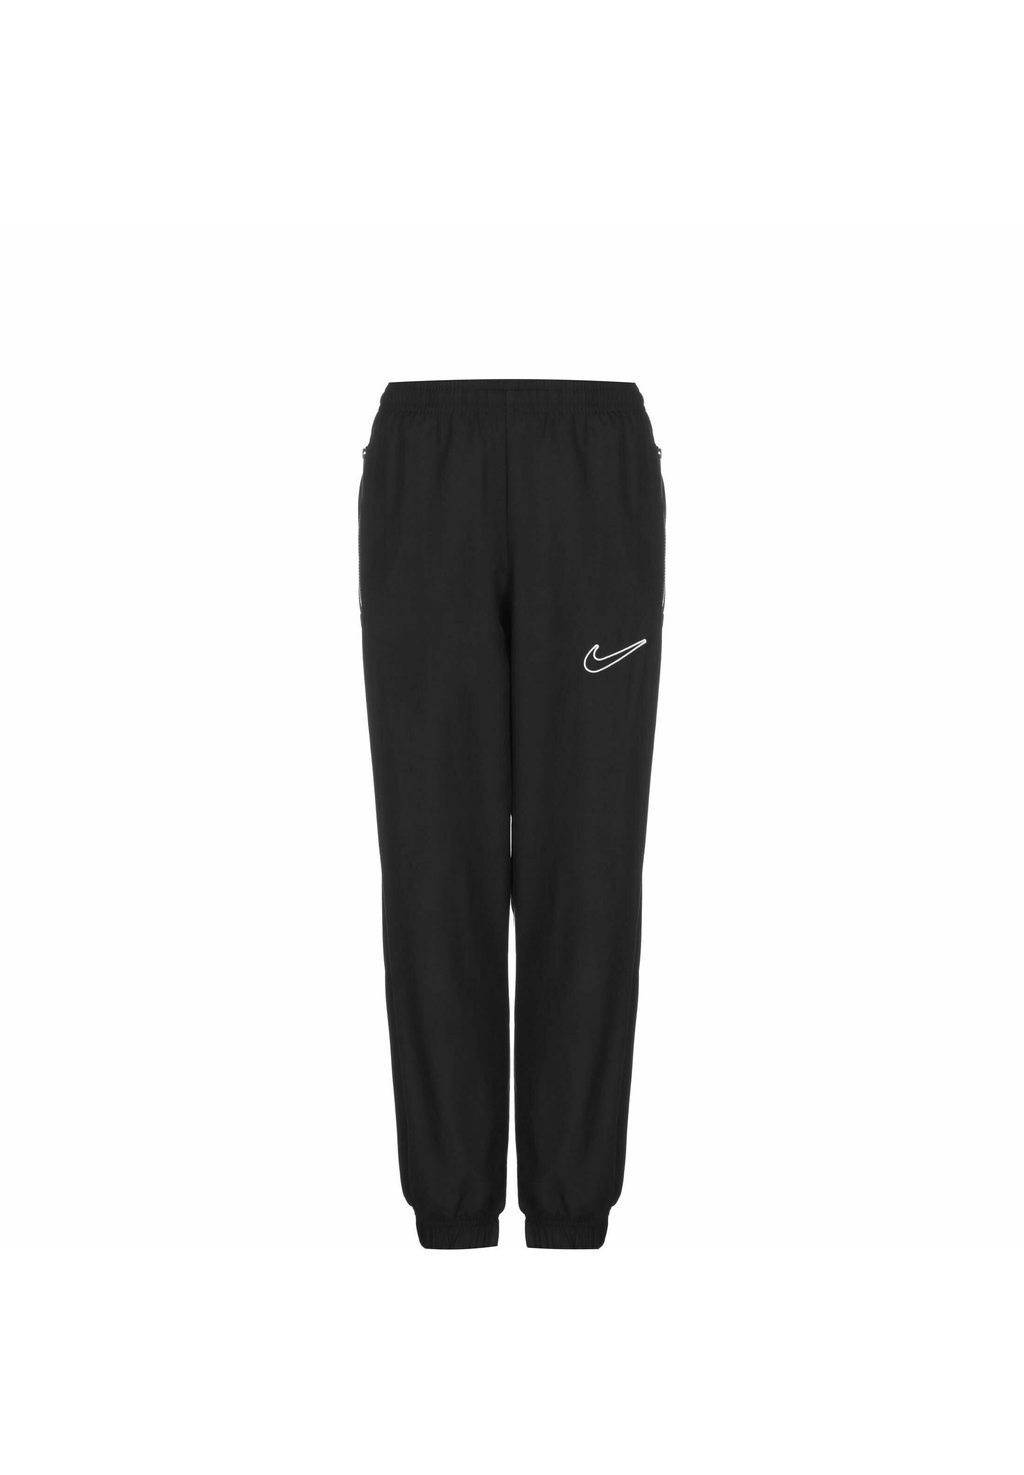 Спортивные брюки Academy 23 Nike, цвет schwarzschwarzweiss